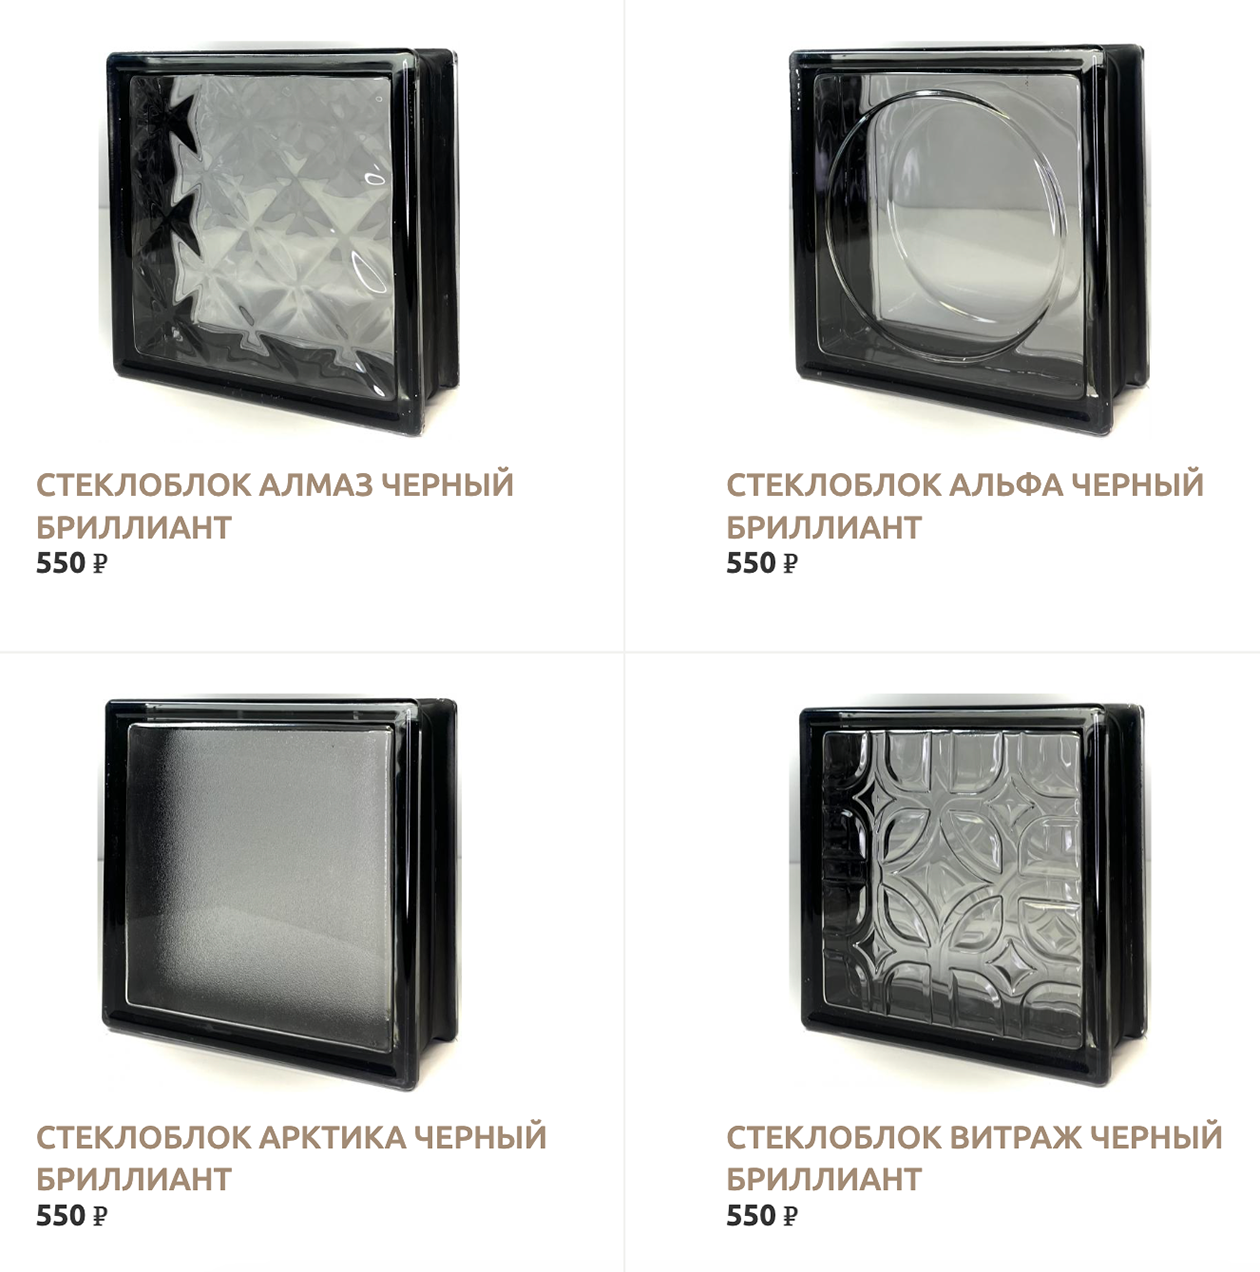 Красиво смотрятся черные стеклоблоки. Источник: steklo-bloks.ru